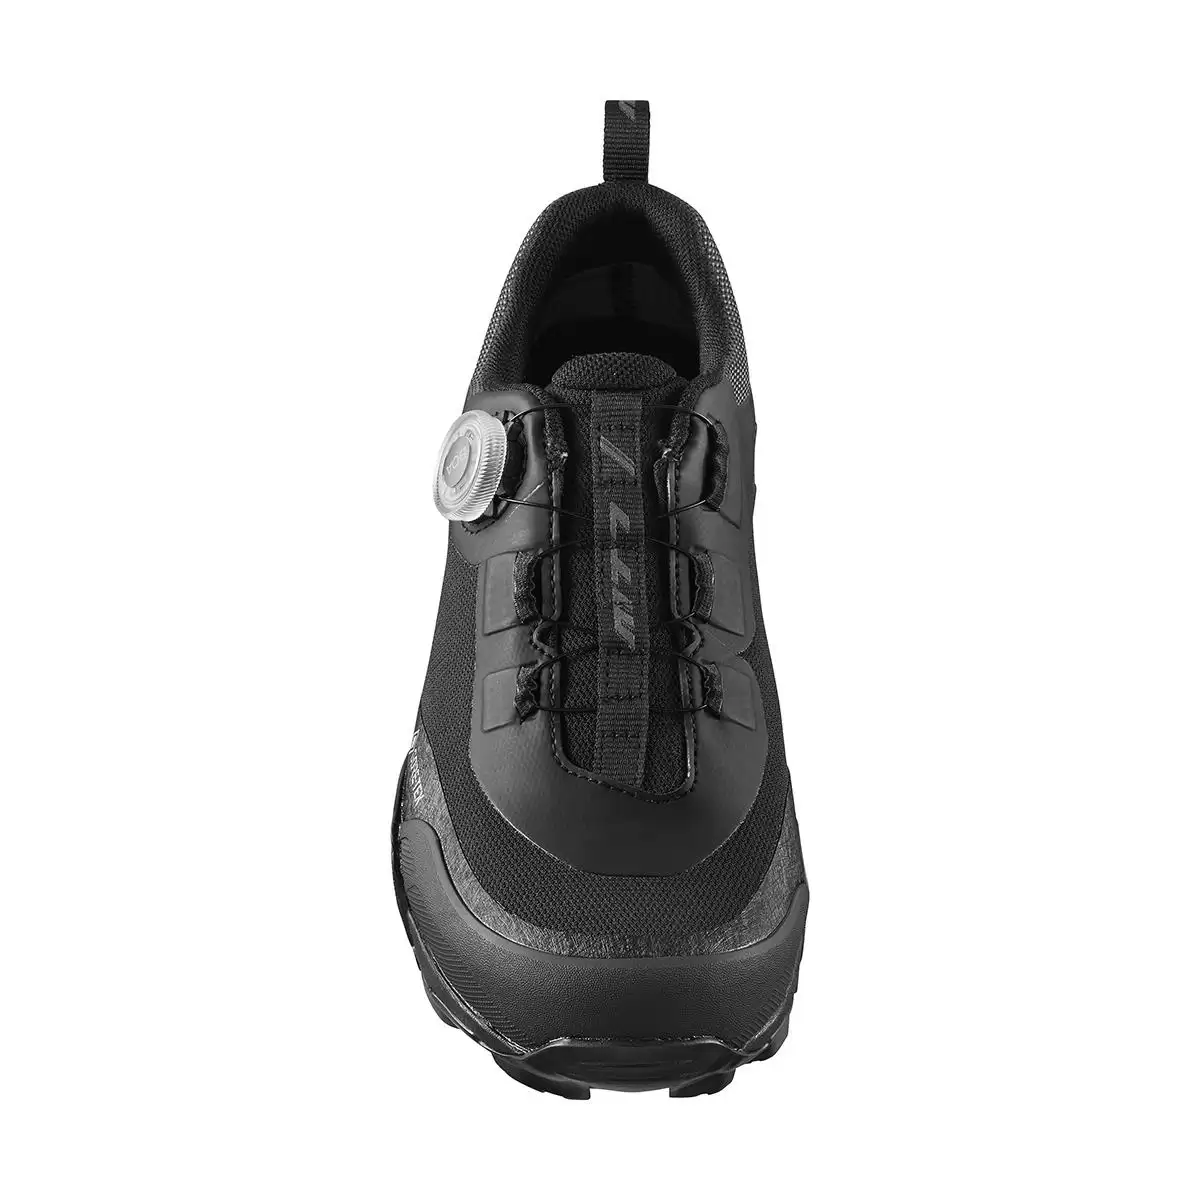 MTB Shoes SH-MT701GTX MT701 Black Size 40 #1